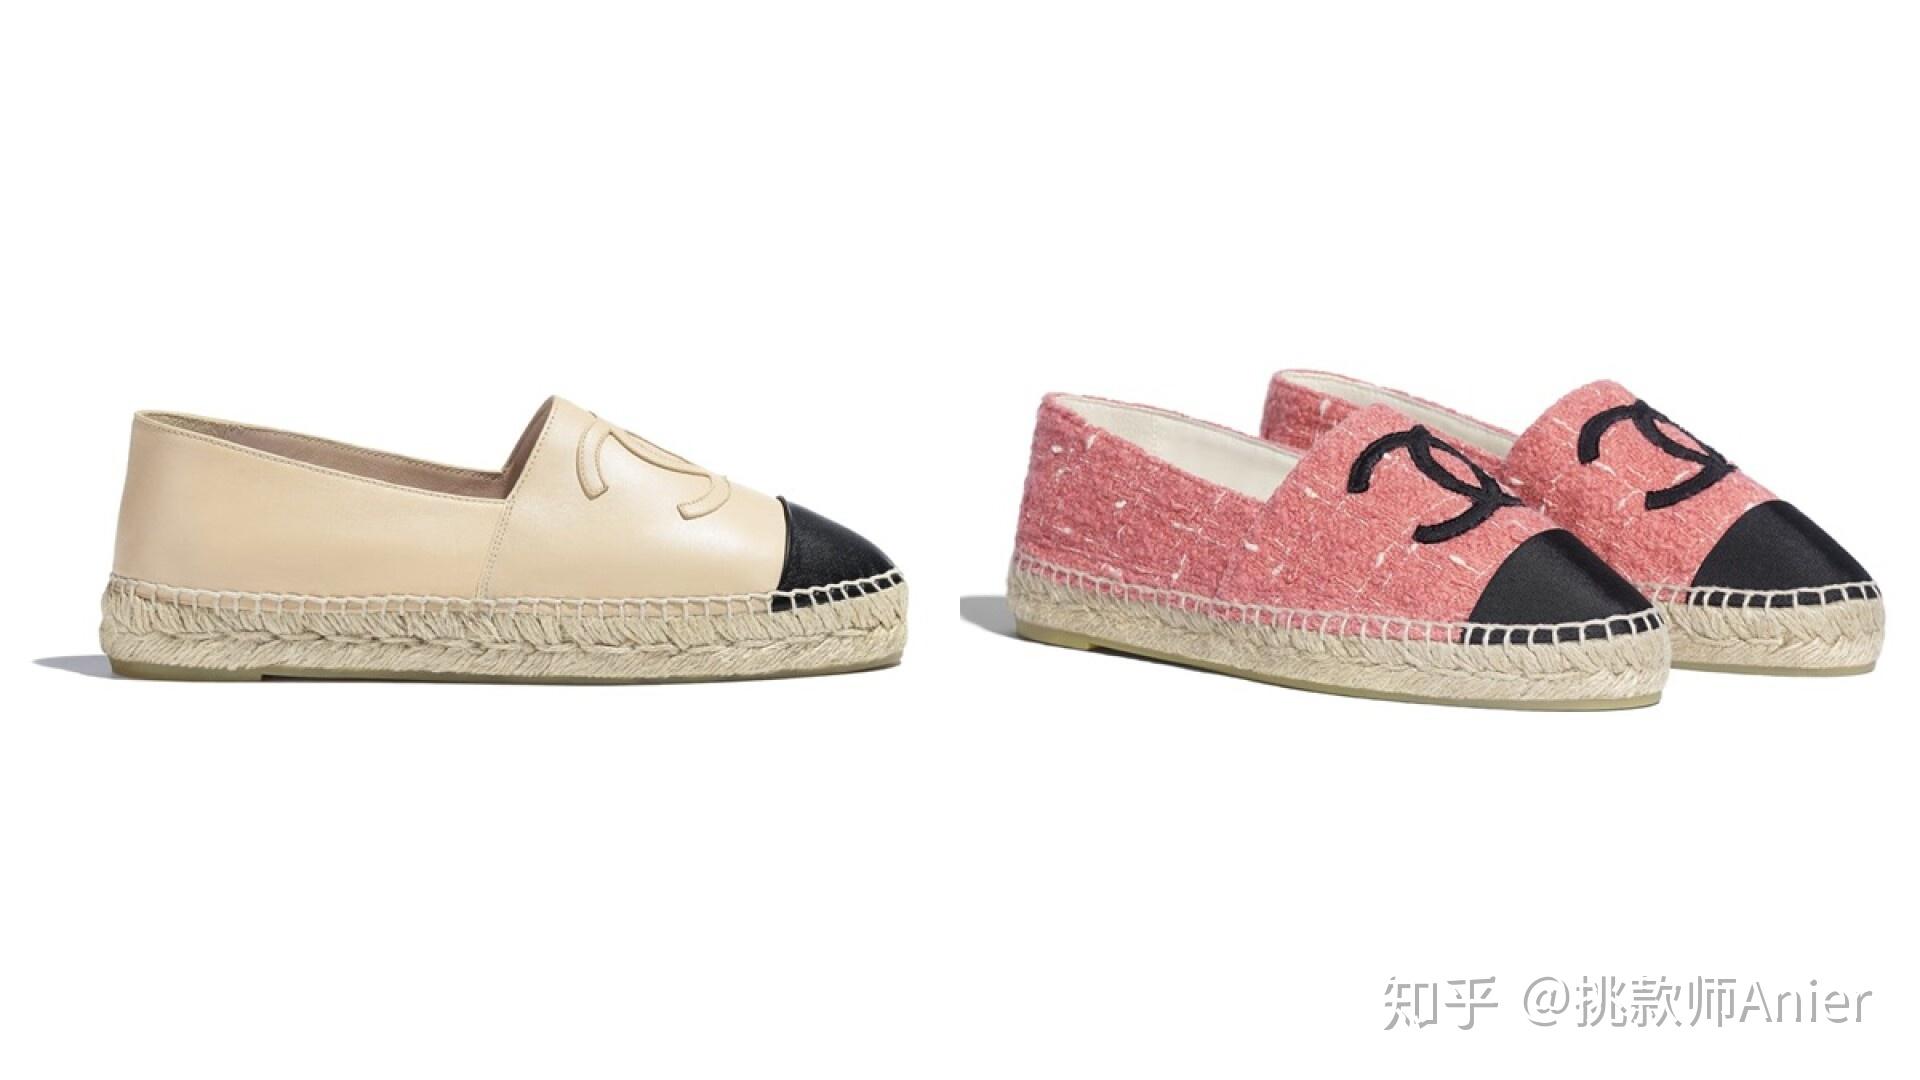 Chanel香奈儿双色拼色鞋--一双鞋搞定所有风格 百搭的经典双色鞋_搜狐时尚_搜狐网